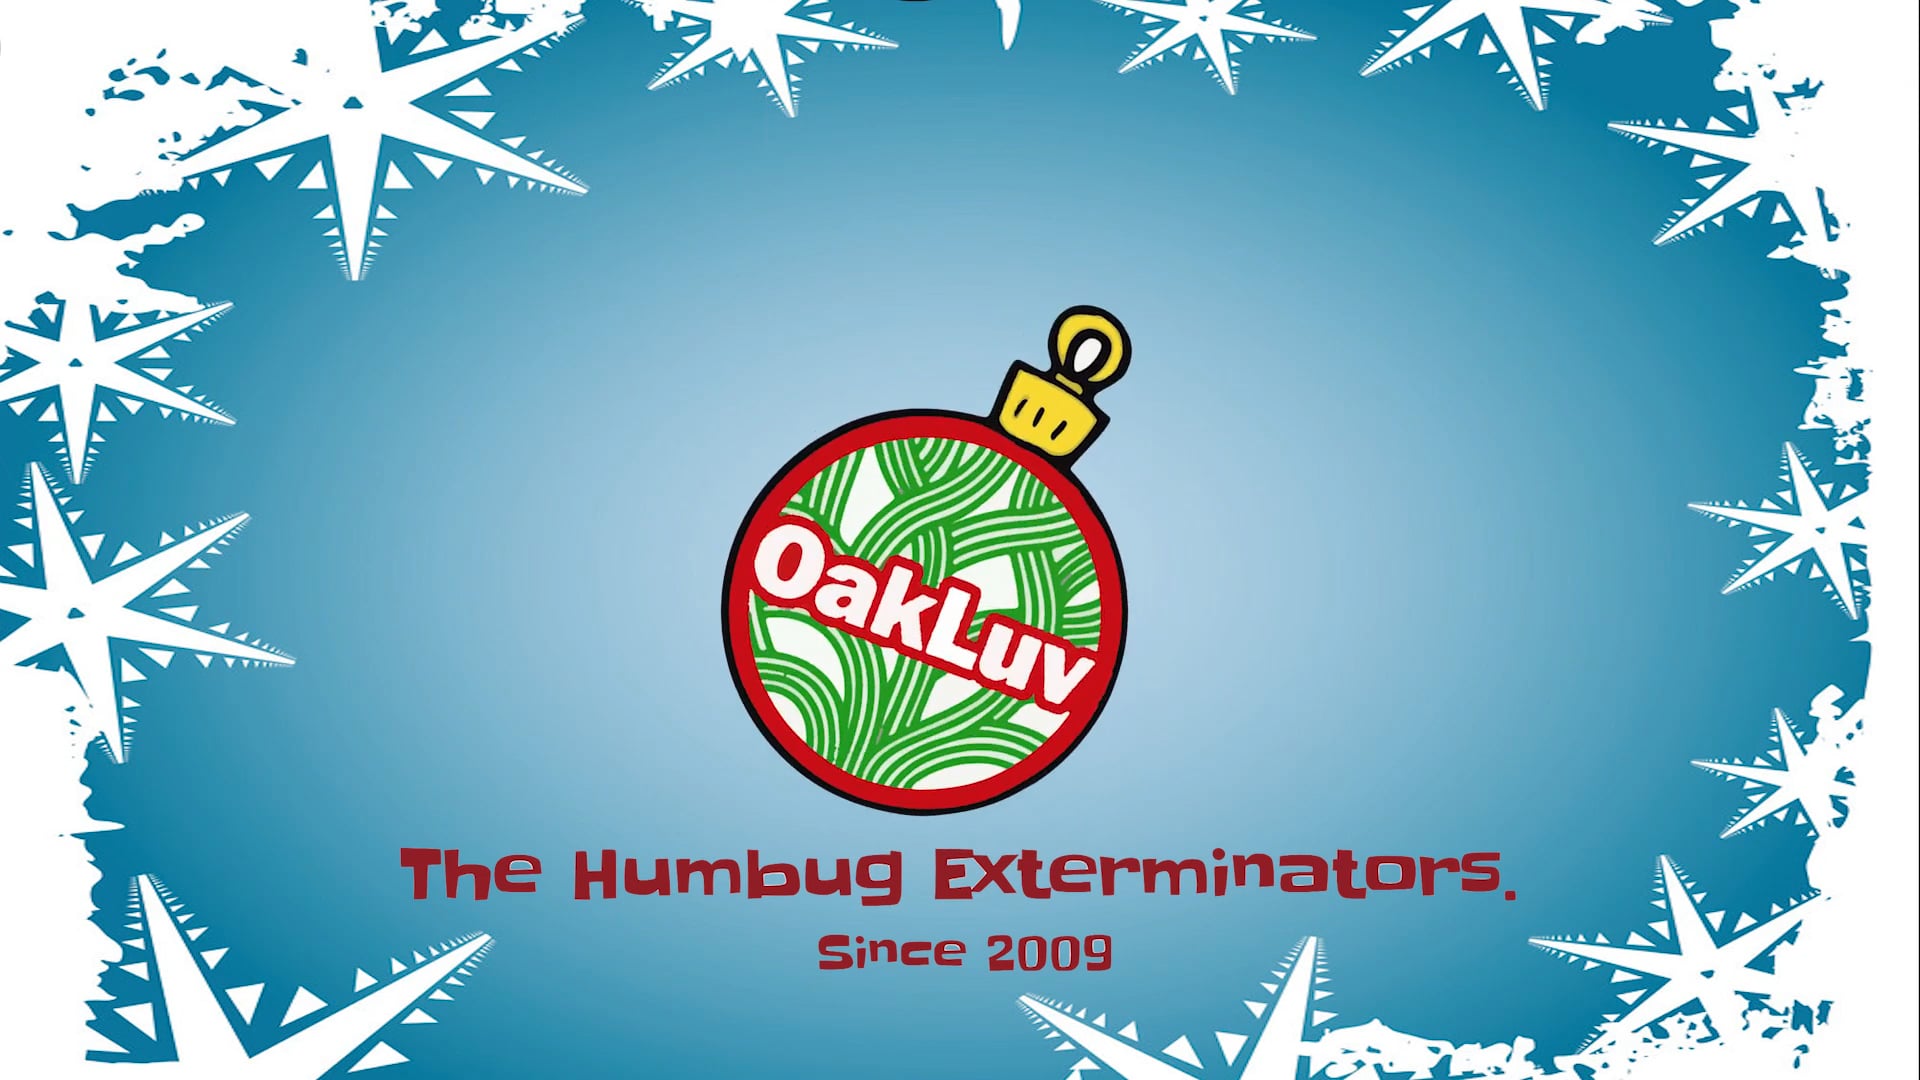 2017 OakLuv: The Humbug Exterminators